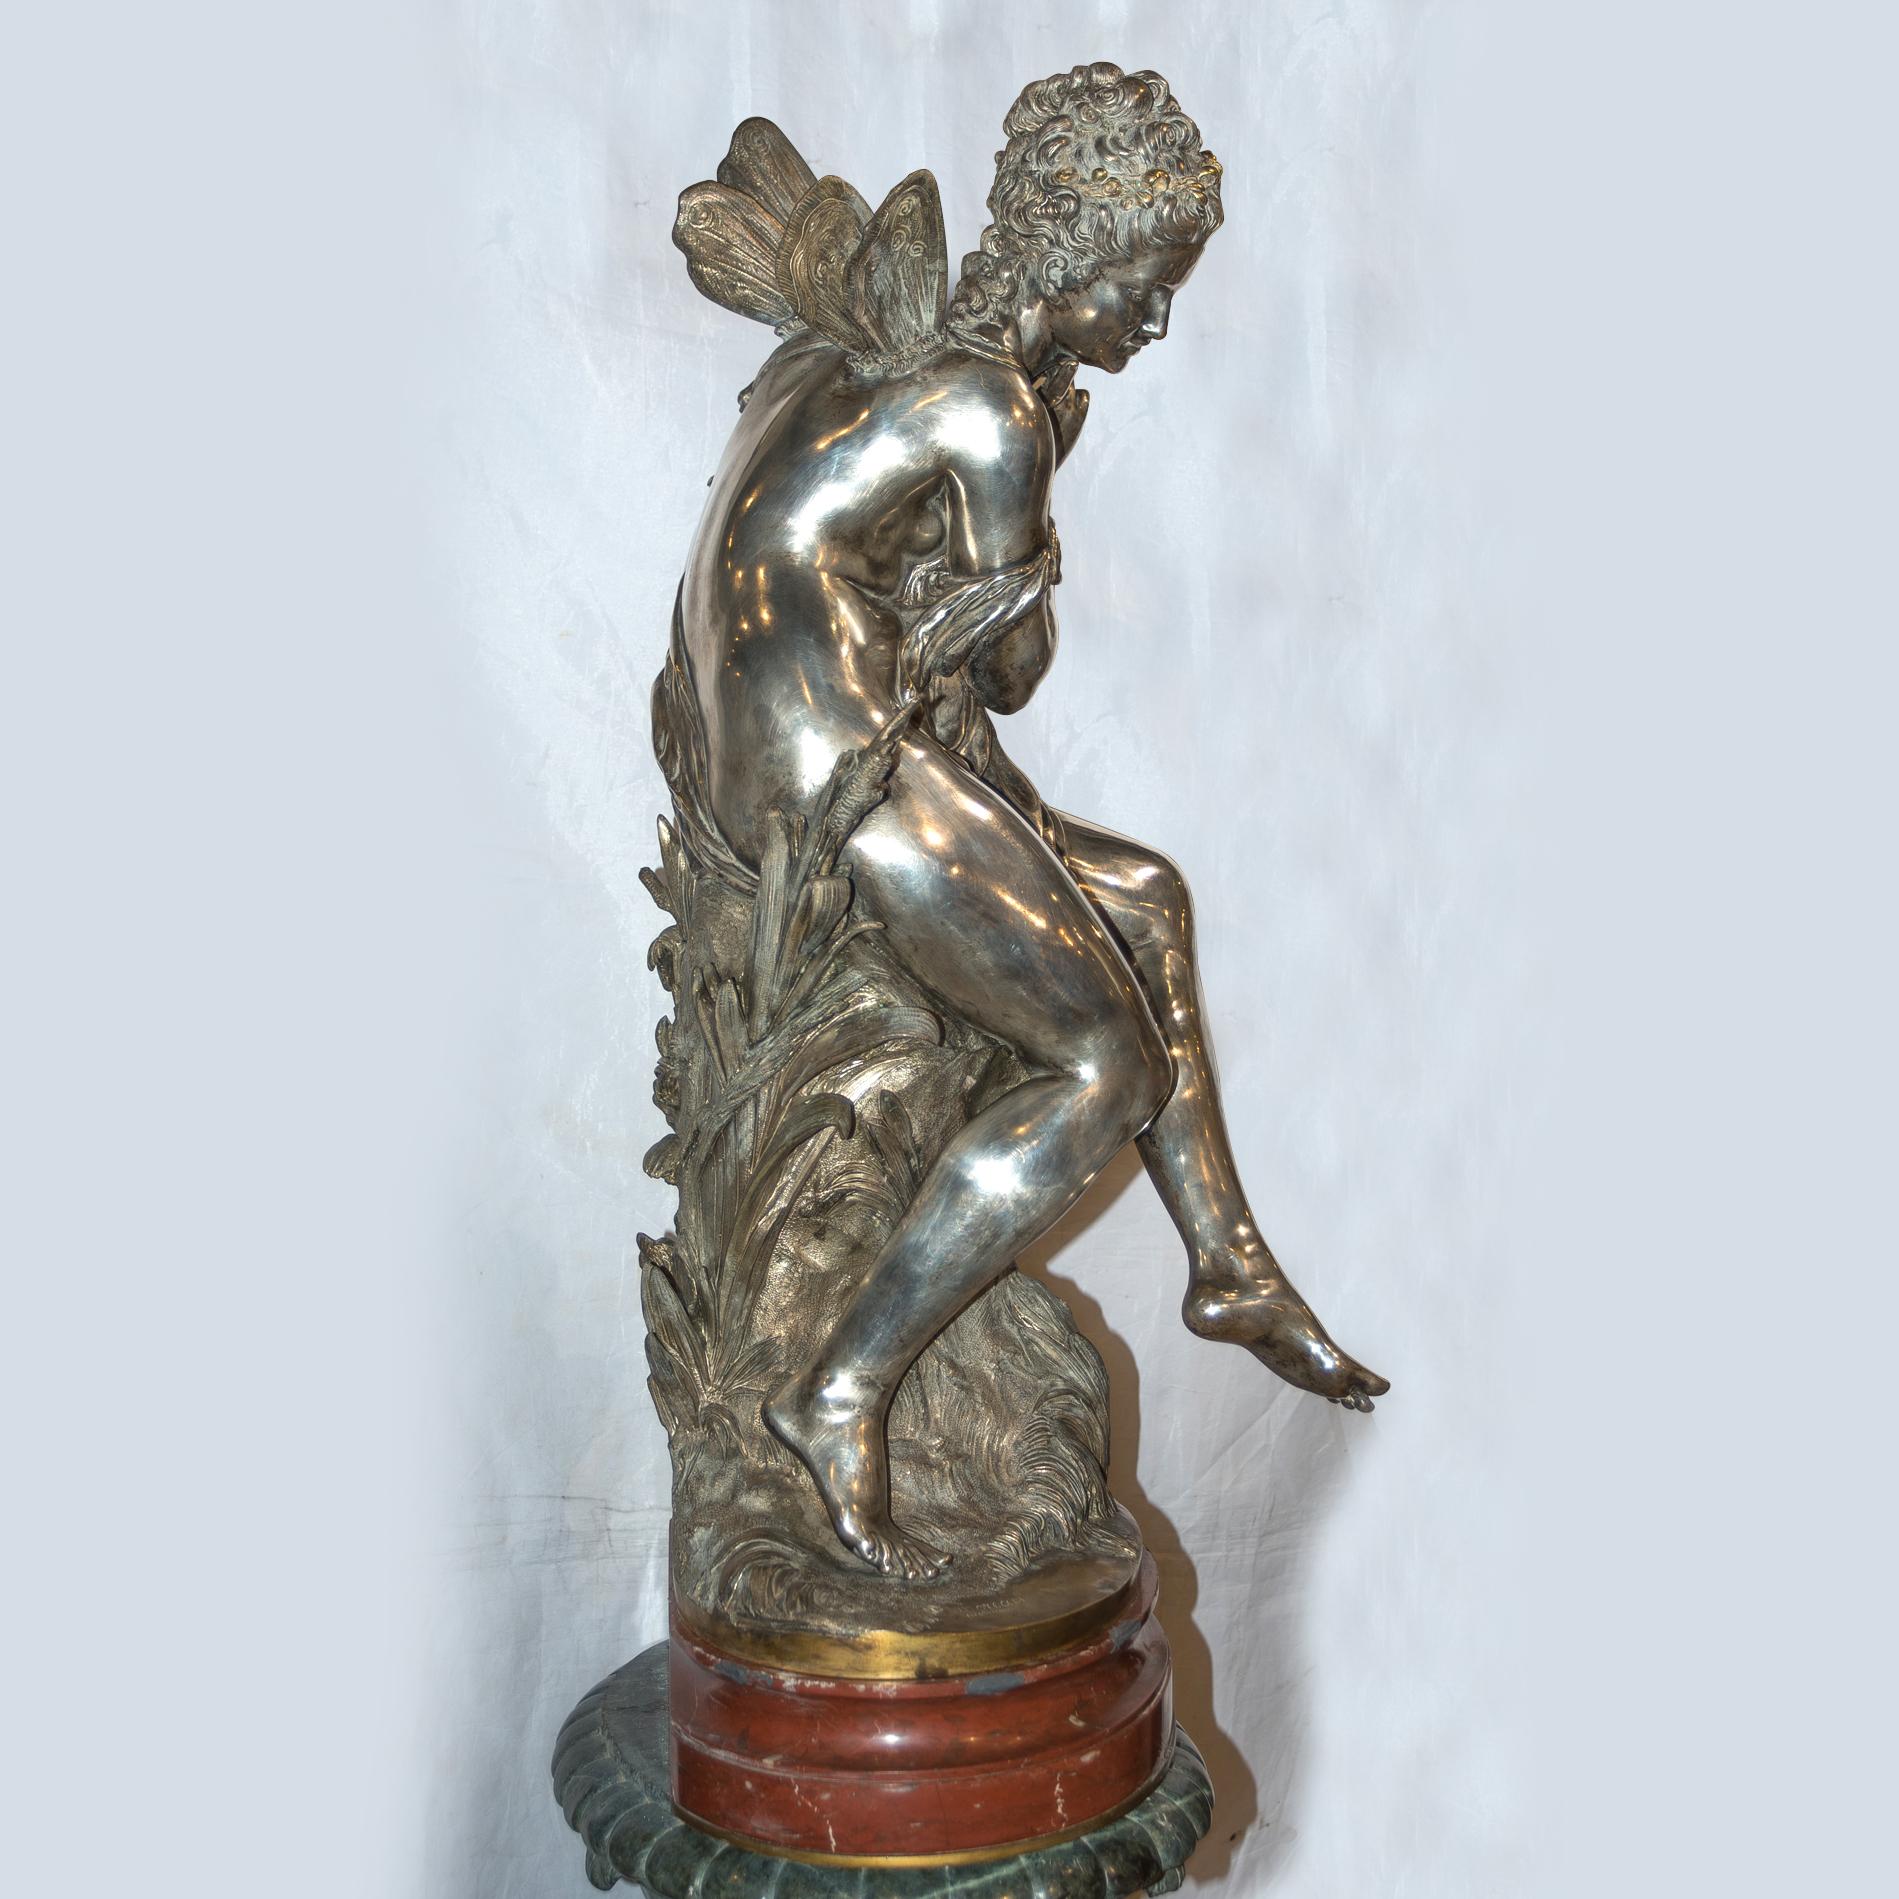 MATHURIN MOREAU 
Französisch, (1822-1914)

Versilberte Bronzefigur der Psyche  

Versilberte Bronze; Signiert 'Moreau Mathurin'.    
30 3/8 x 15 x 13 Zoll